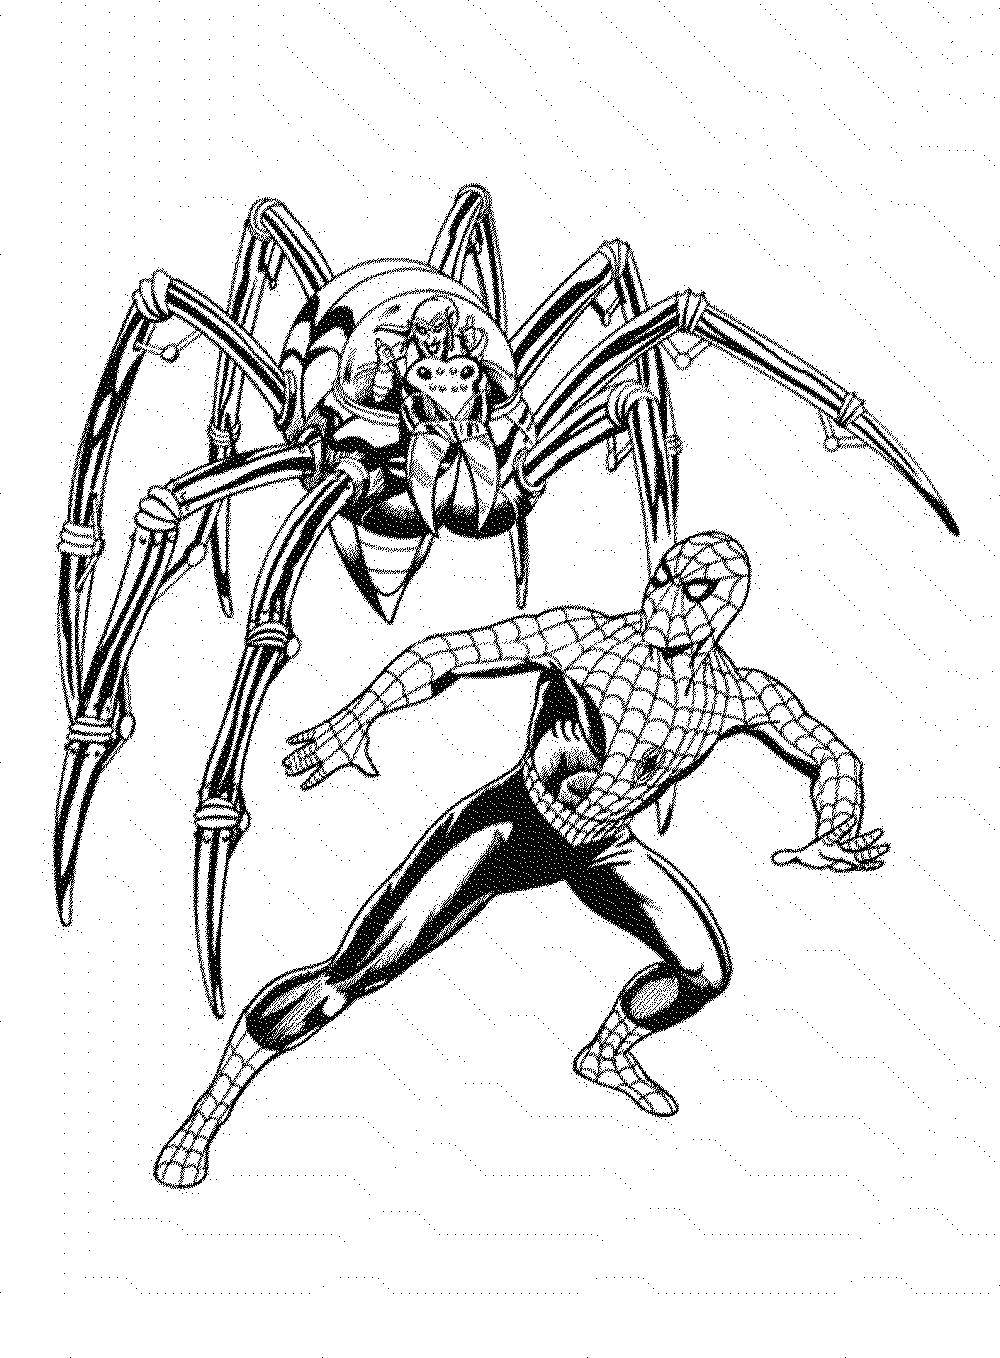 Название: Раскраска Человек паук сражается с врагом. Категория: Комиксы. Теги: Комиксы, Спайдермэн, Человек Паук.